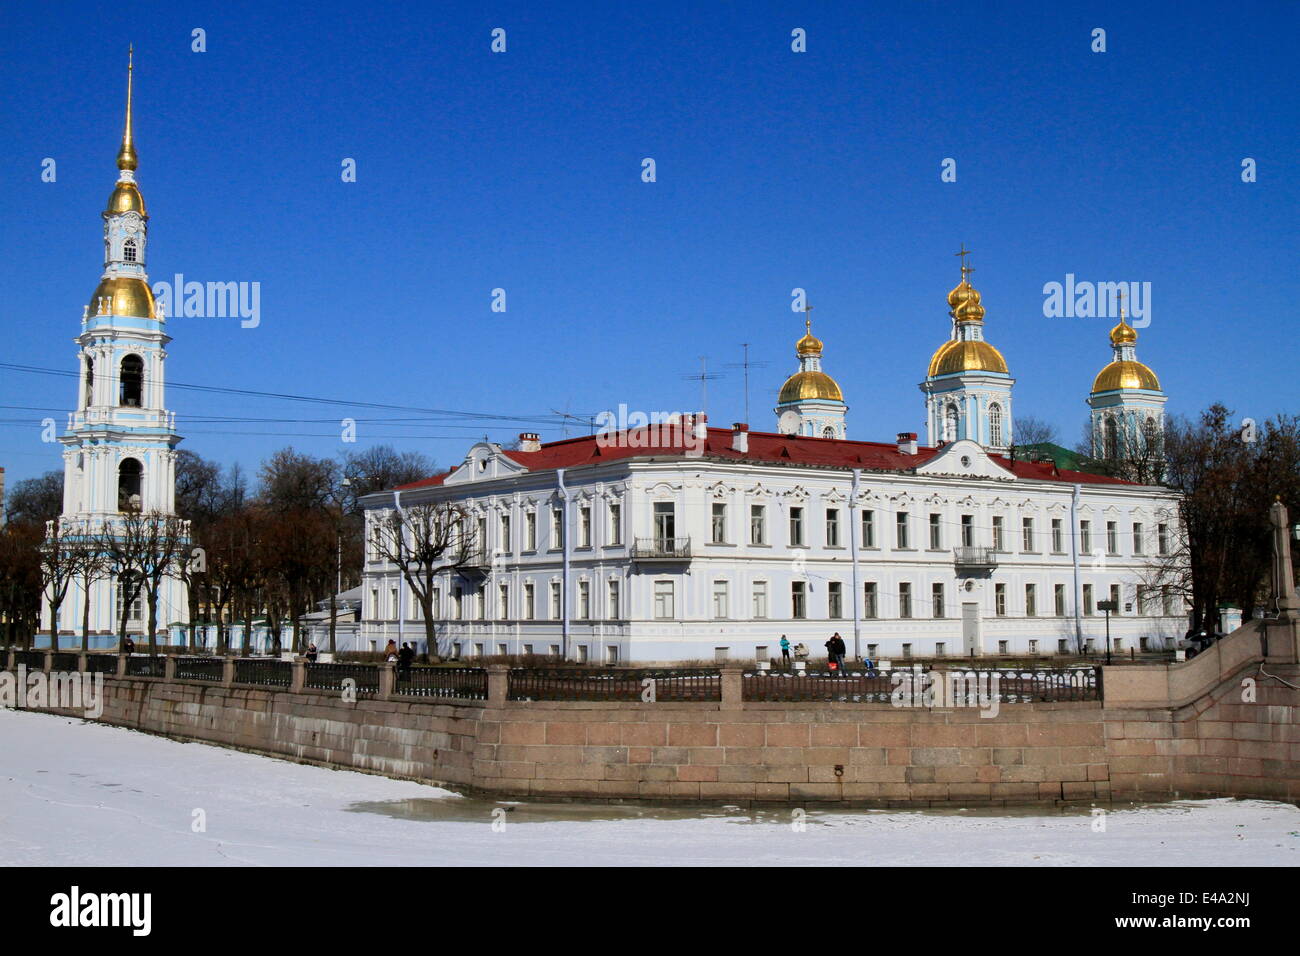 Russian Orthodox Church, St. Peterburg, Russia, Europe Stock Photo